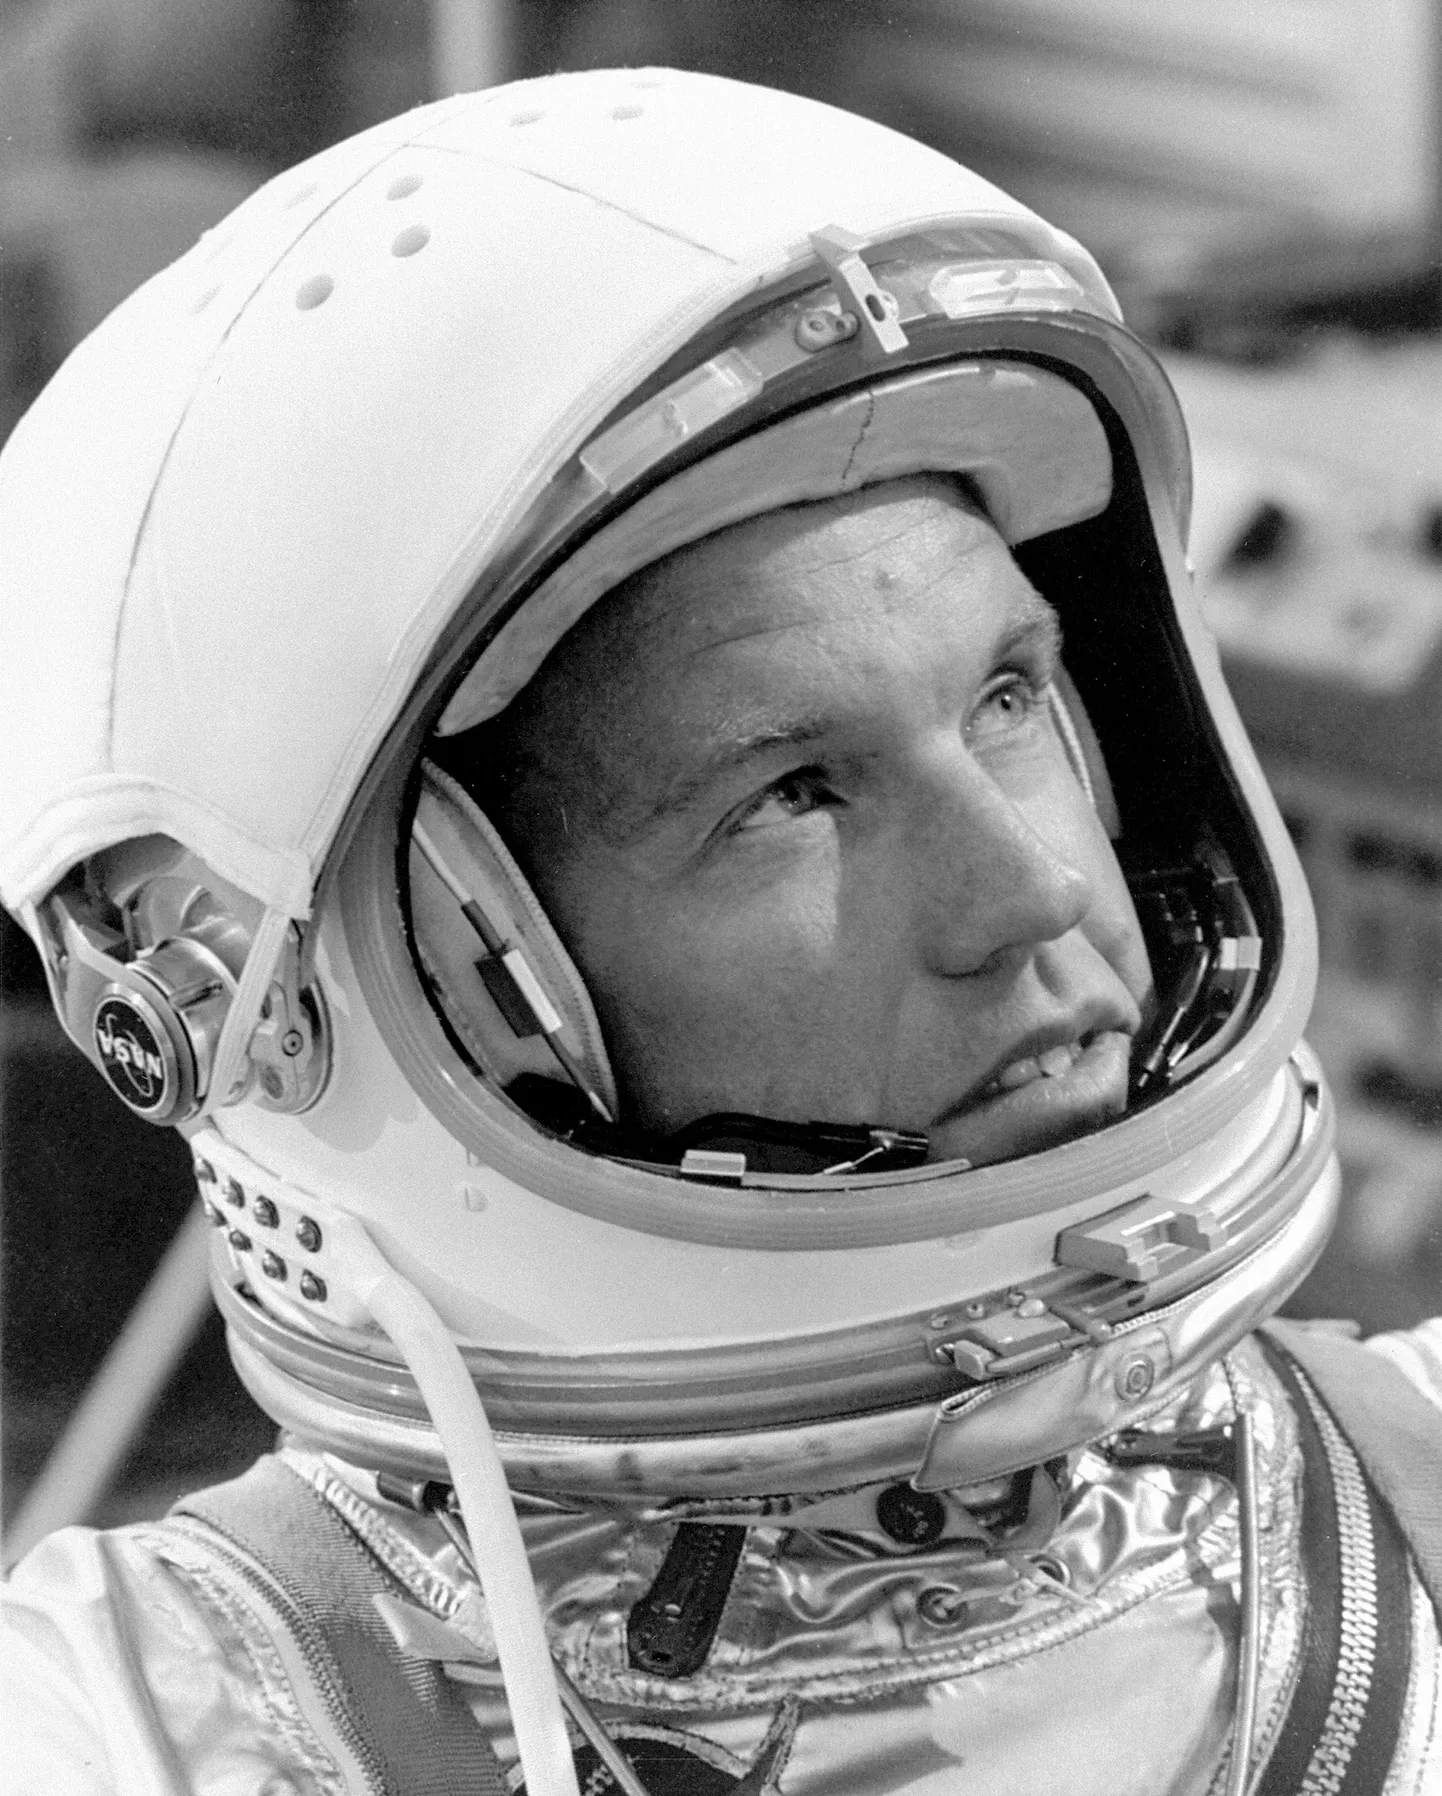 Astronaud Leroy Gordon Cooper